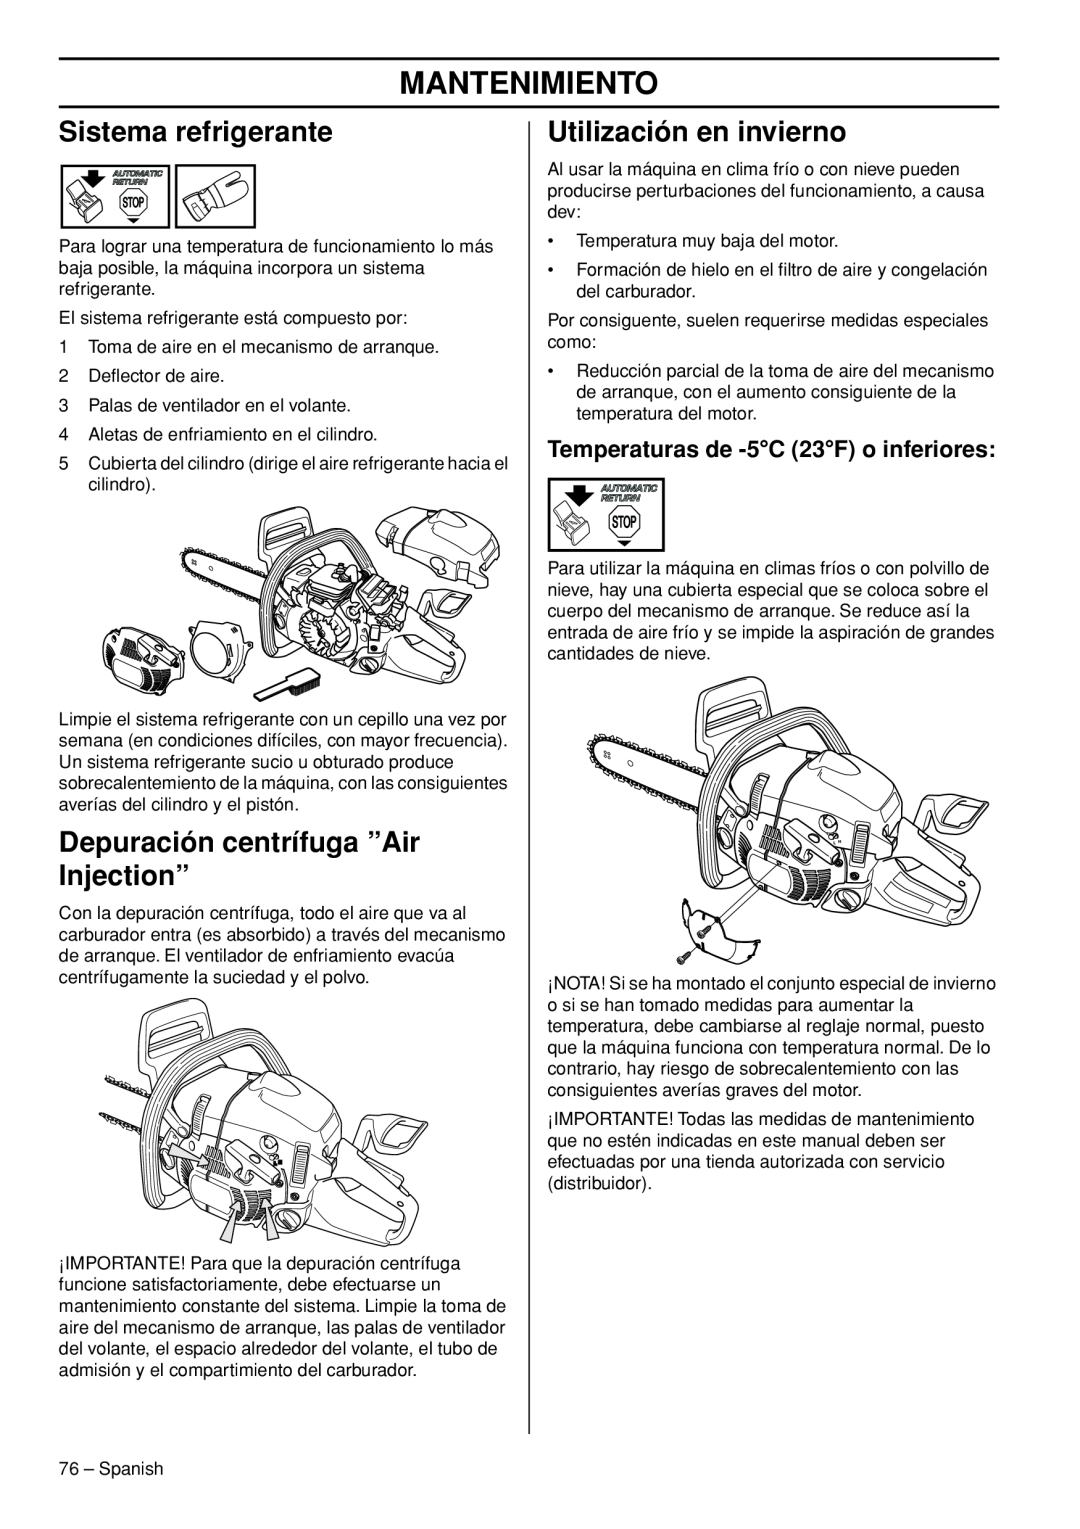 Husqvarna 445e TrioBrake manual Sistema refrigerante, Depuración centrífuga ”Air Injection”, Utilización en invierno 